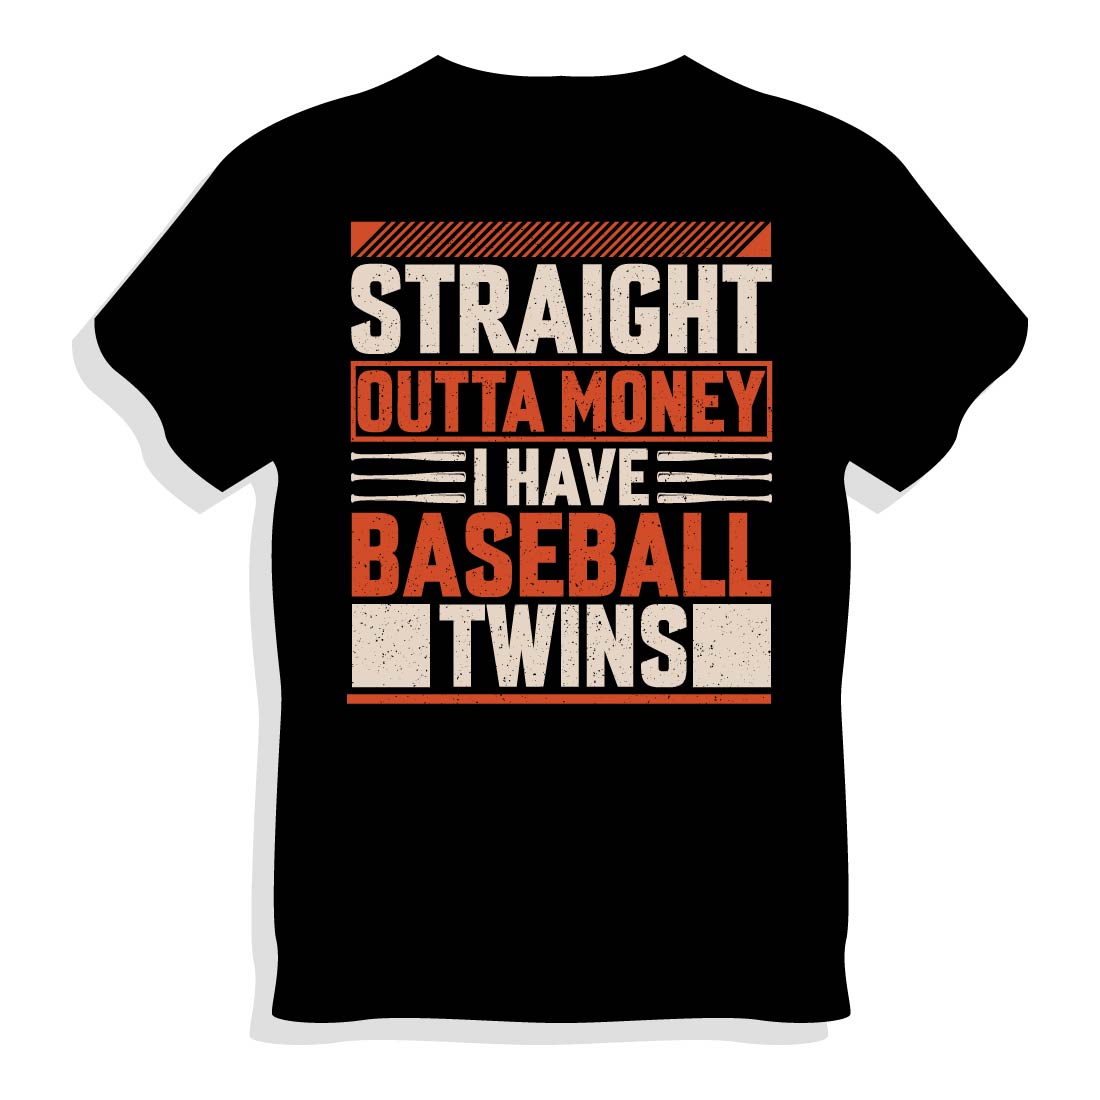 Baseball T-shirt Design cover image.